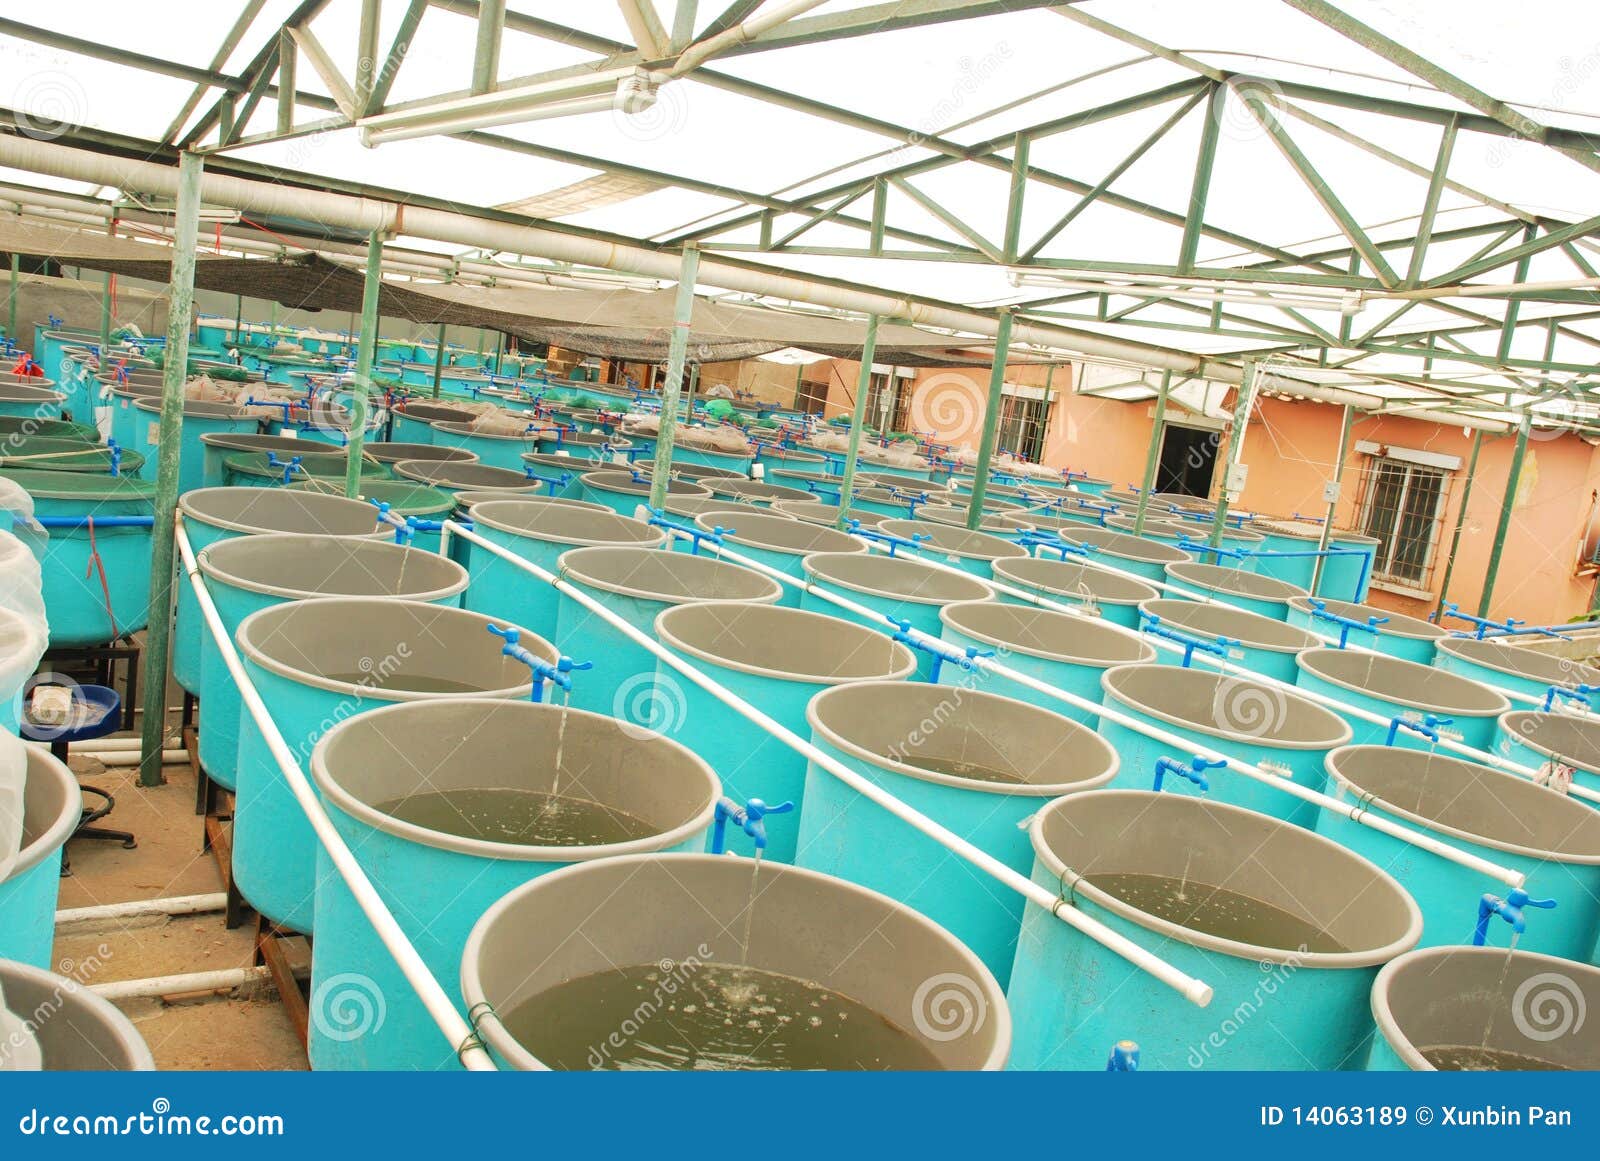 agriculture aquaculture farm